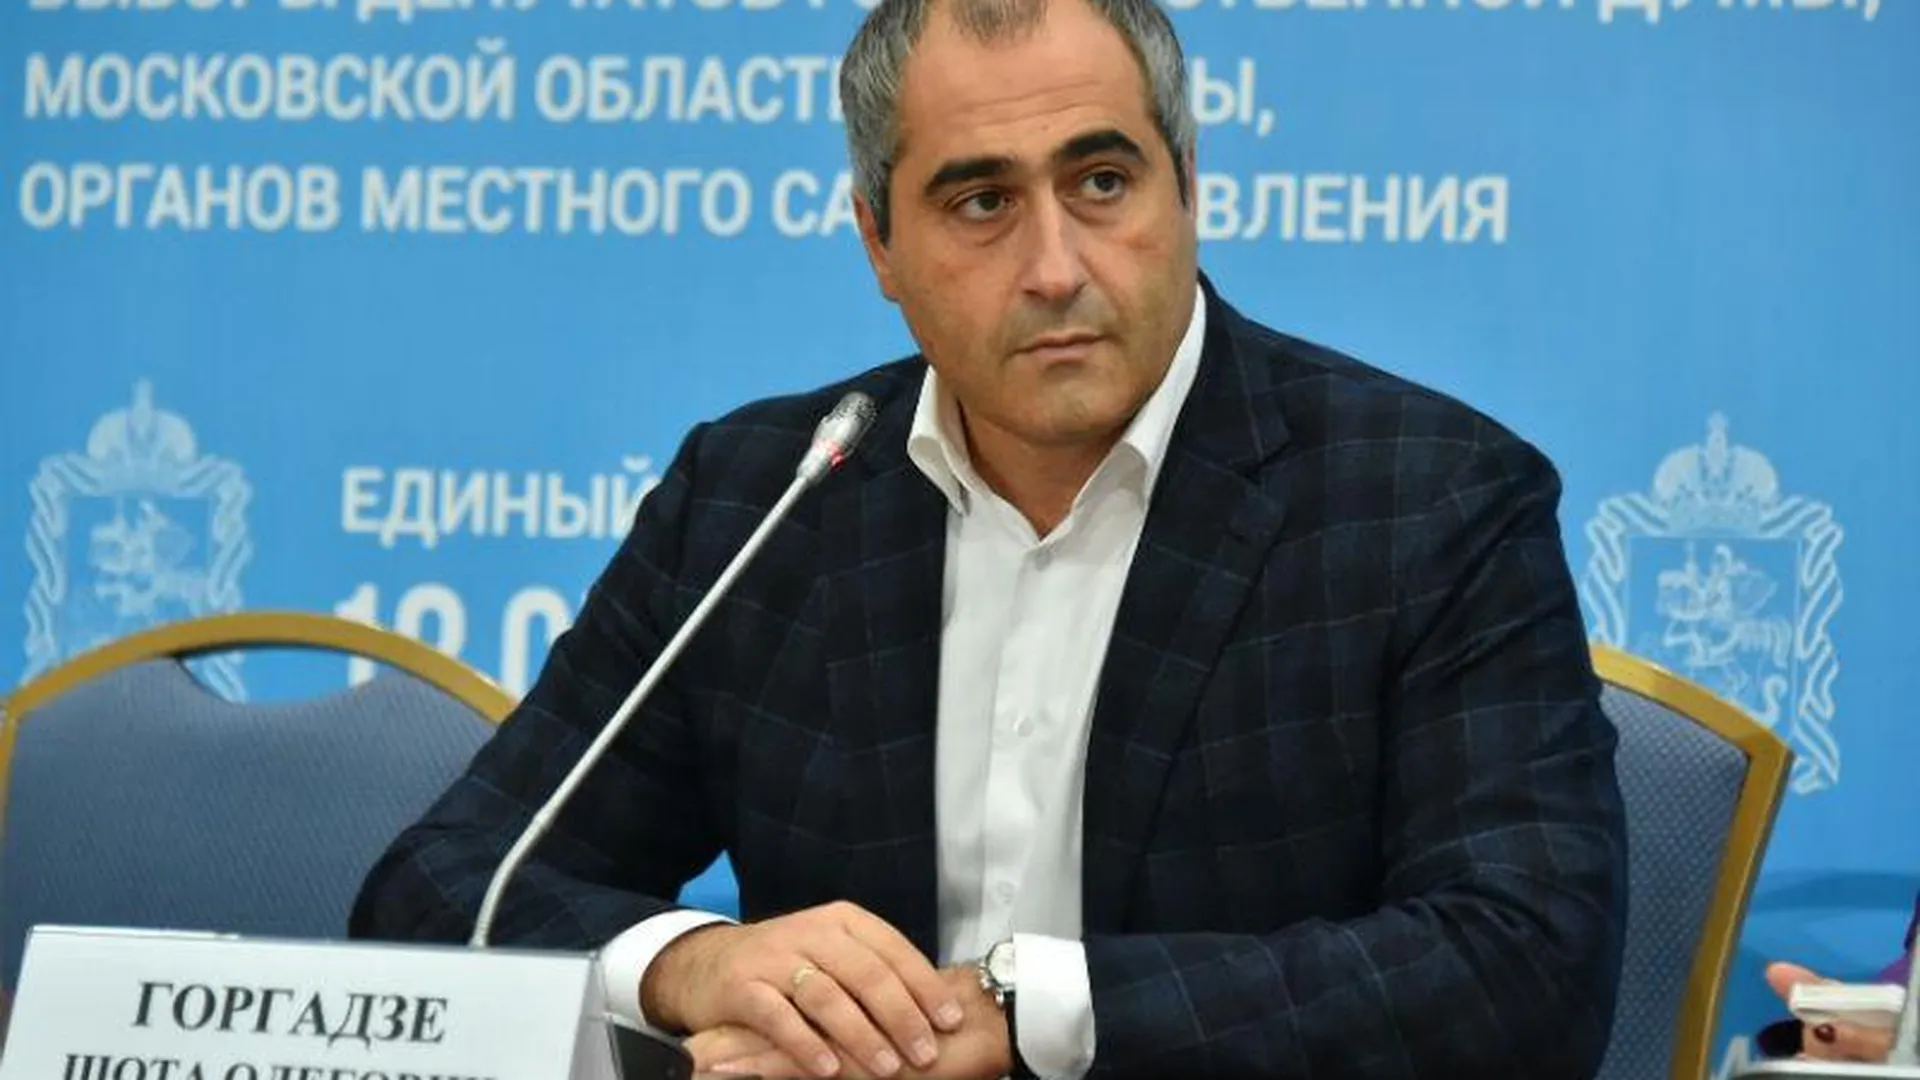 Подвоз избирателей в Одинцовском районе не подтвердился – Горгадзе